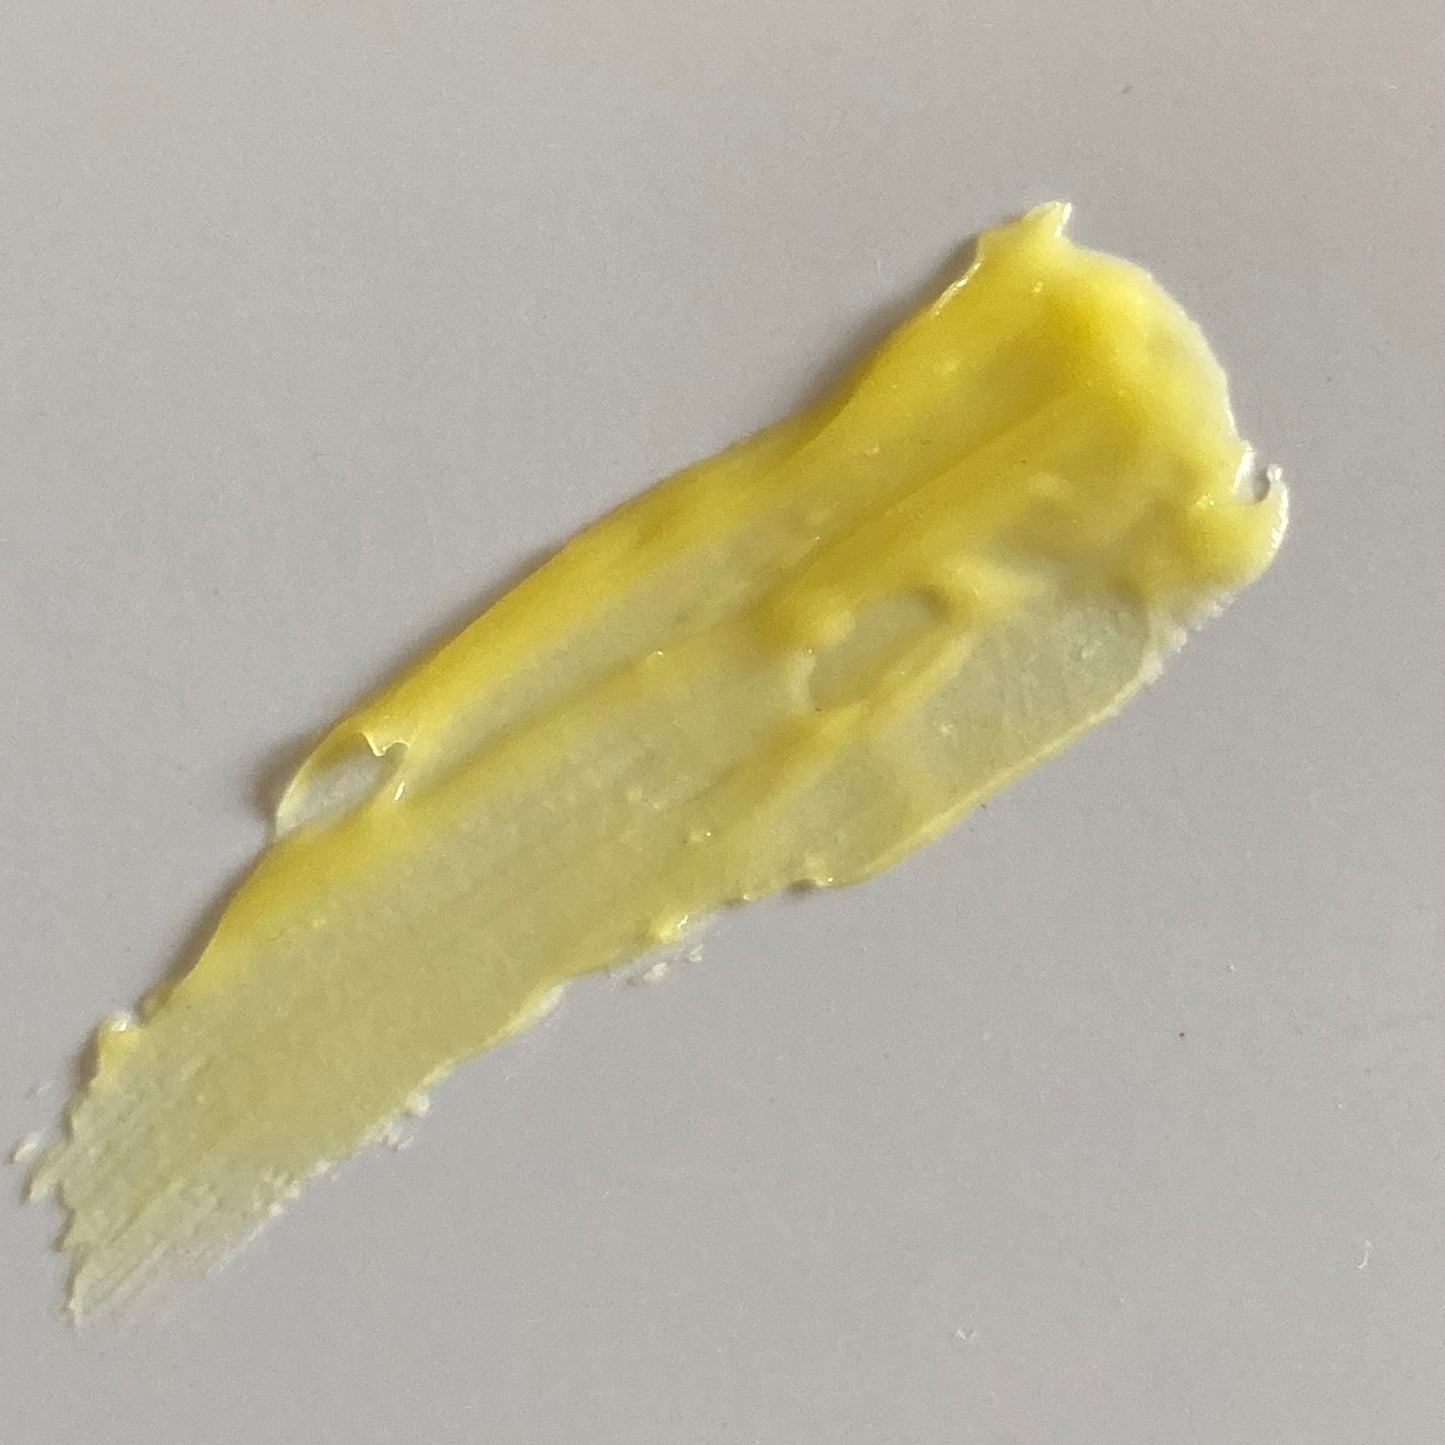 Smear of yellow balm spread onto grey background